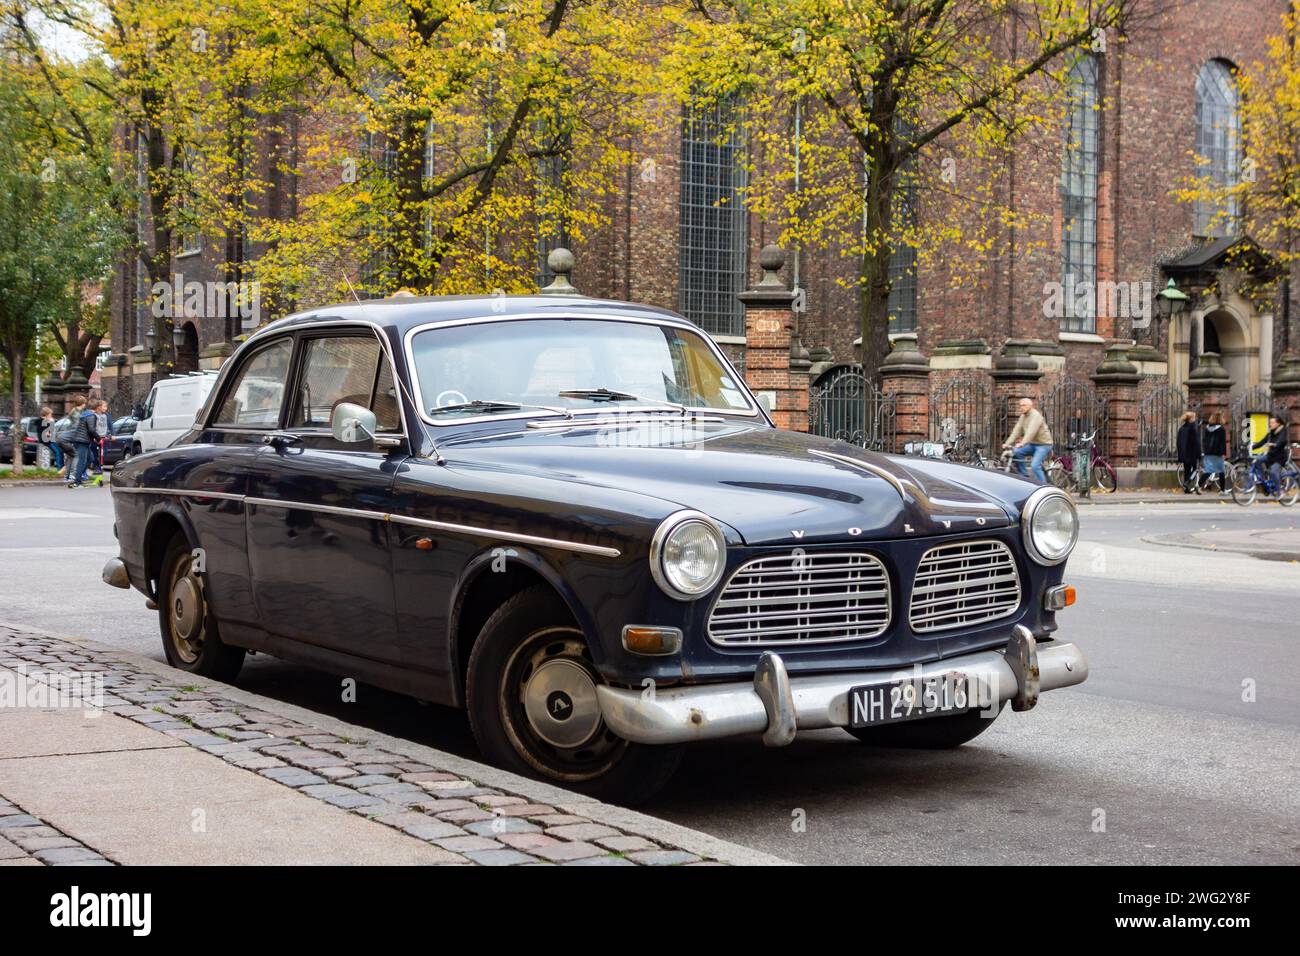 COPENHAGUE, DANEMARK - 27 OCTOBRE 2014 : voiture suédoise Volvo 122S coupé des années 1960 garée dans les rues de Copenhague Banque D'Images